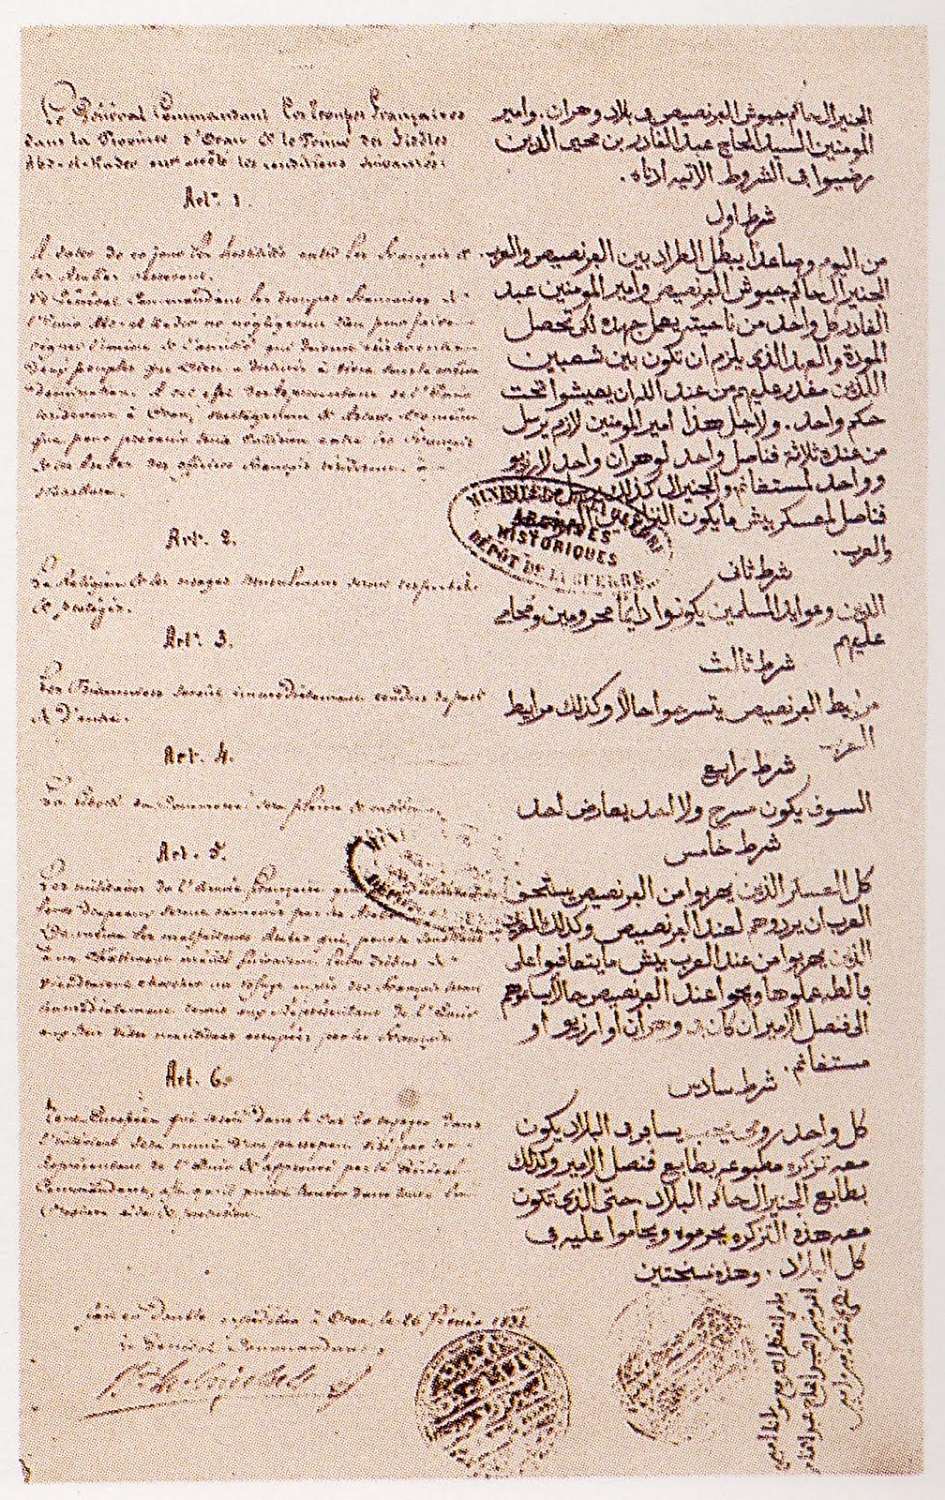 Traité Desmichels signé en 1834 entre la France et Abd el-Kader ; tampon du ministère de la Guerre, archives historiques, 1834. © Wikimedia Commons, domaine public.